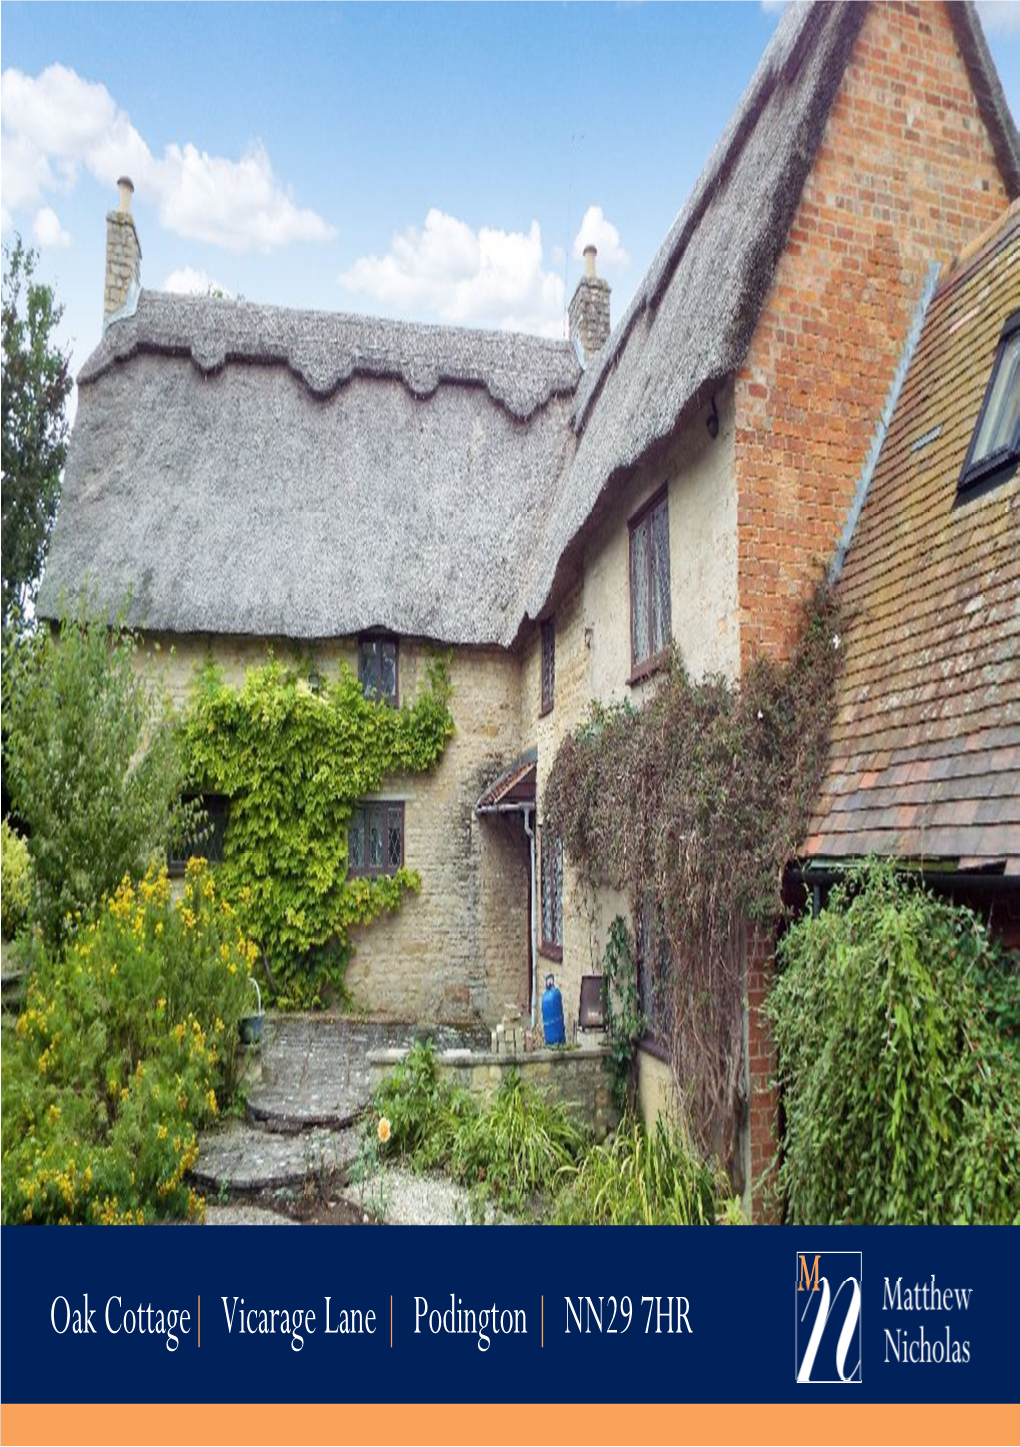 Oak Cottage | Vicarage Lane | Podington | NN29 7HR